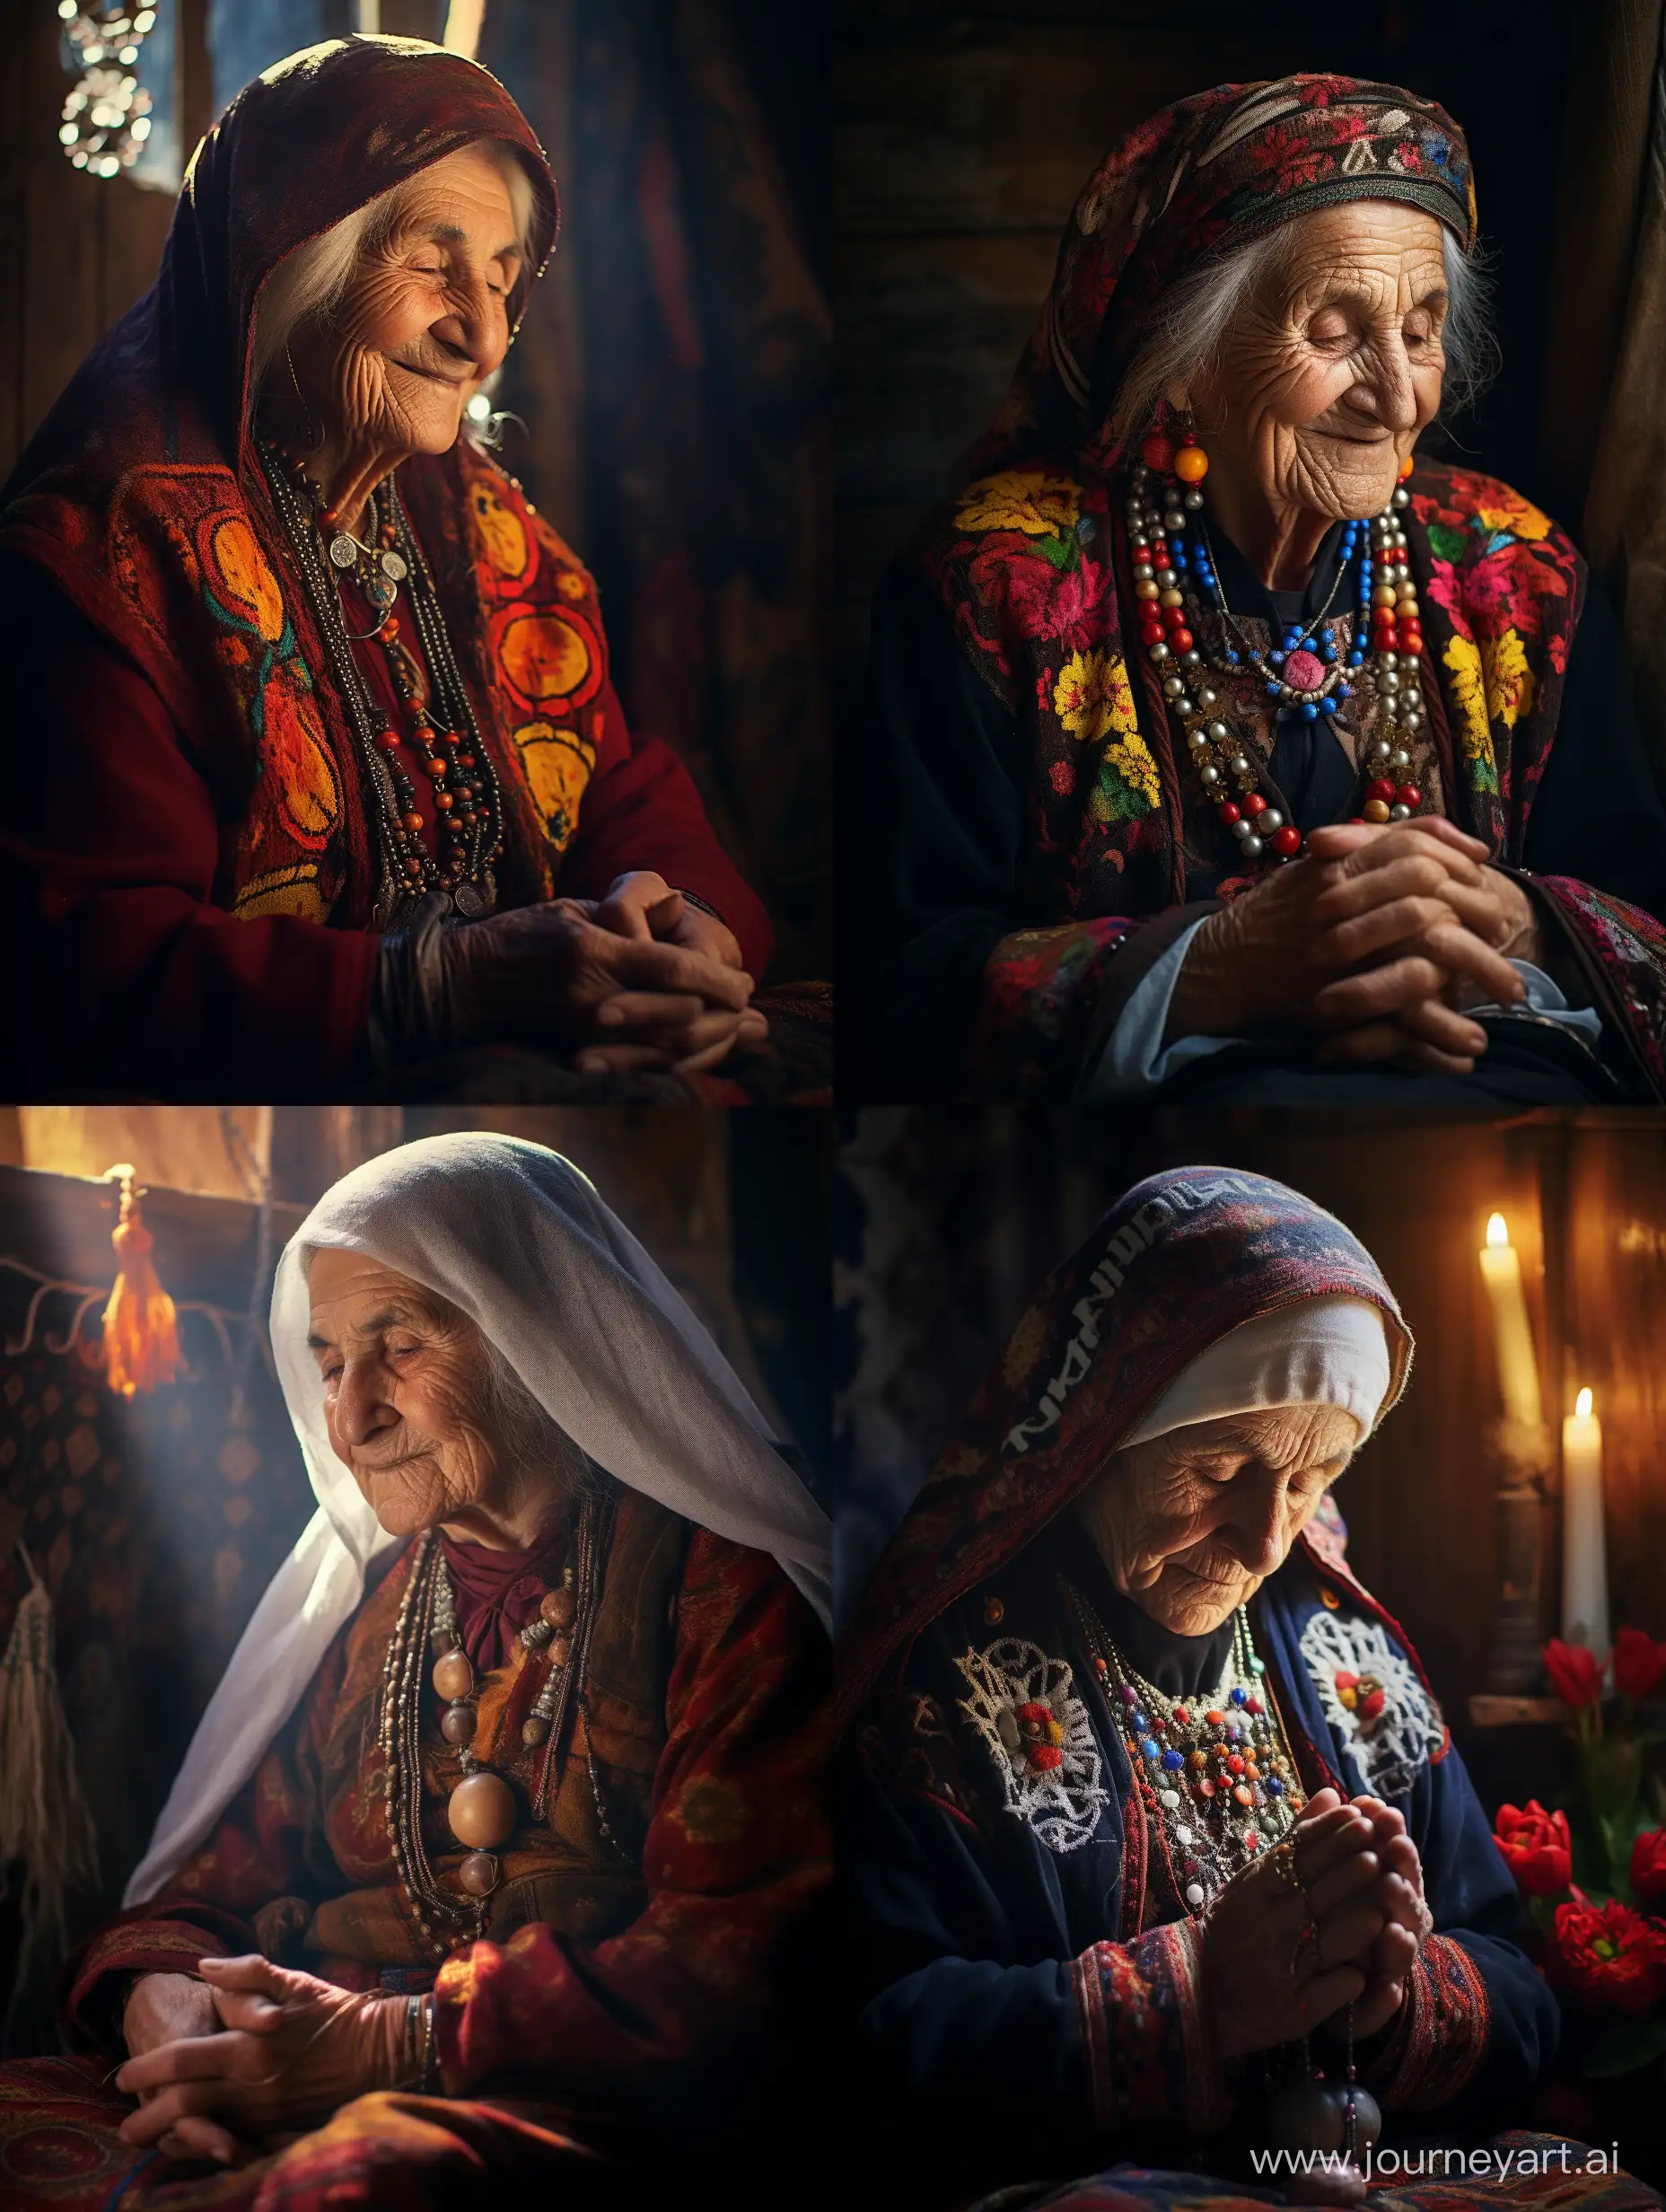 очень старая мудрая с доброй улыбкой бабушка, с малым количеством морщин, глаза закрыты, без головного убора на голове, армянской внешности, предсказывает будущее. очень похожа на настоящую hd 4K смотрит прямо, в комнате мало света, на бабушке магические бусы фото на Nikon D600 , на заднем плане огоньки, в руках талисман, красивые пышные седые волосы